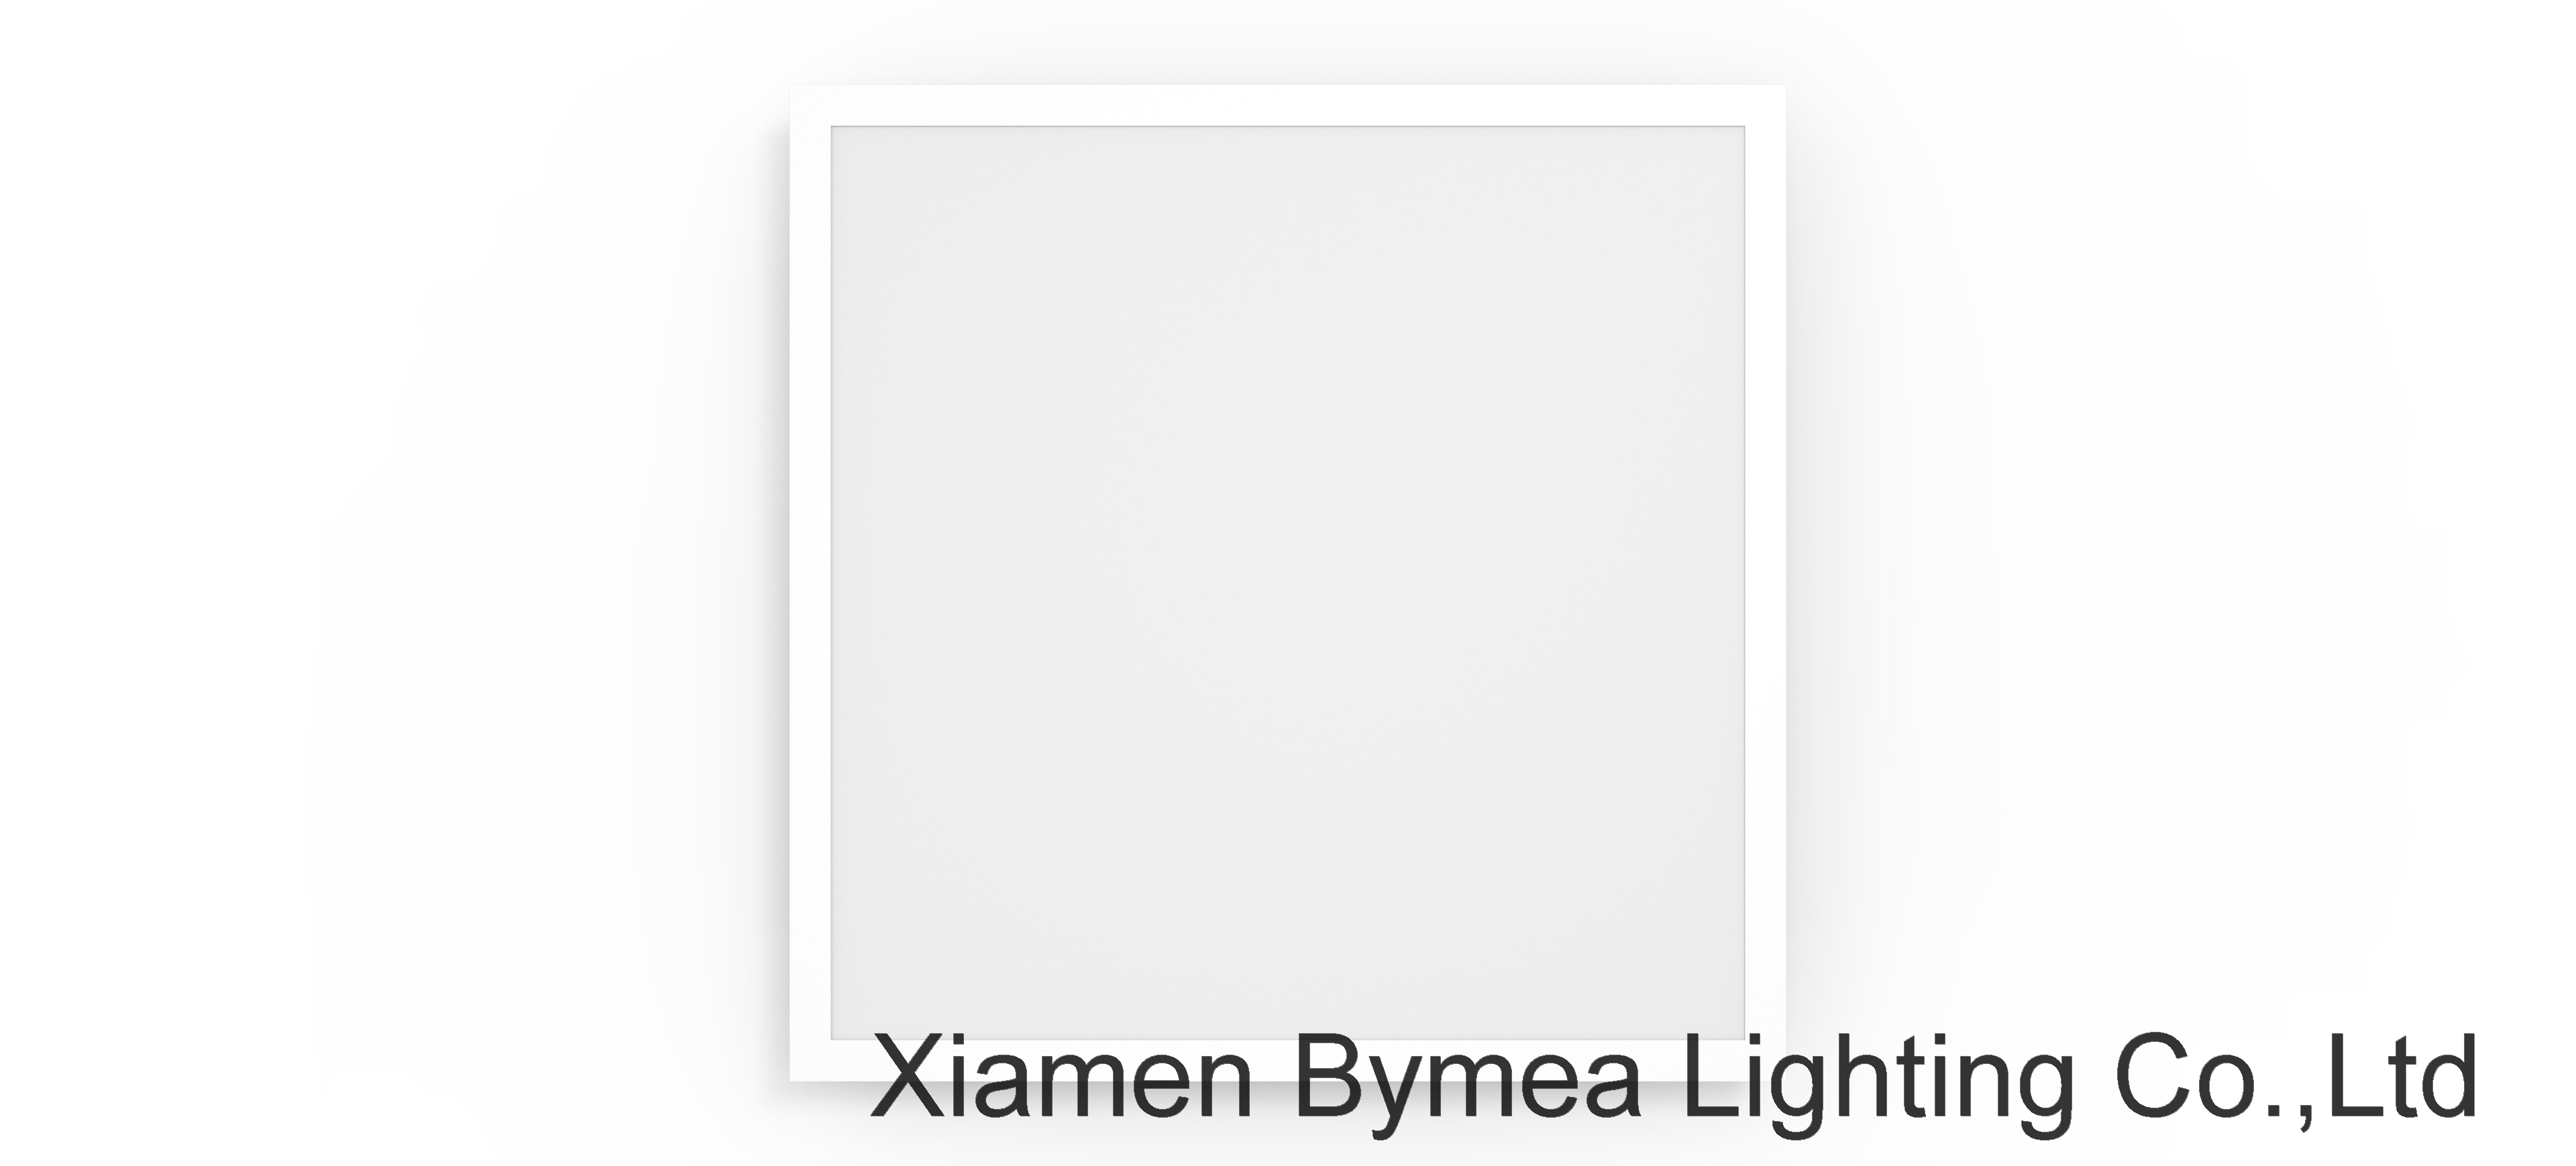 LED Super Backlit Panel 2x2 standard